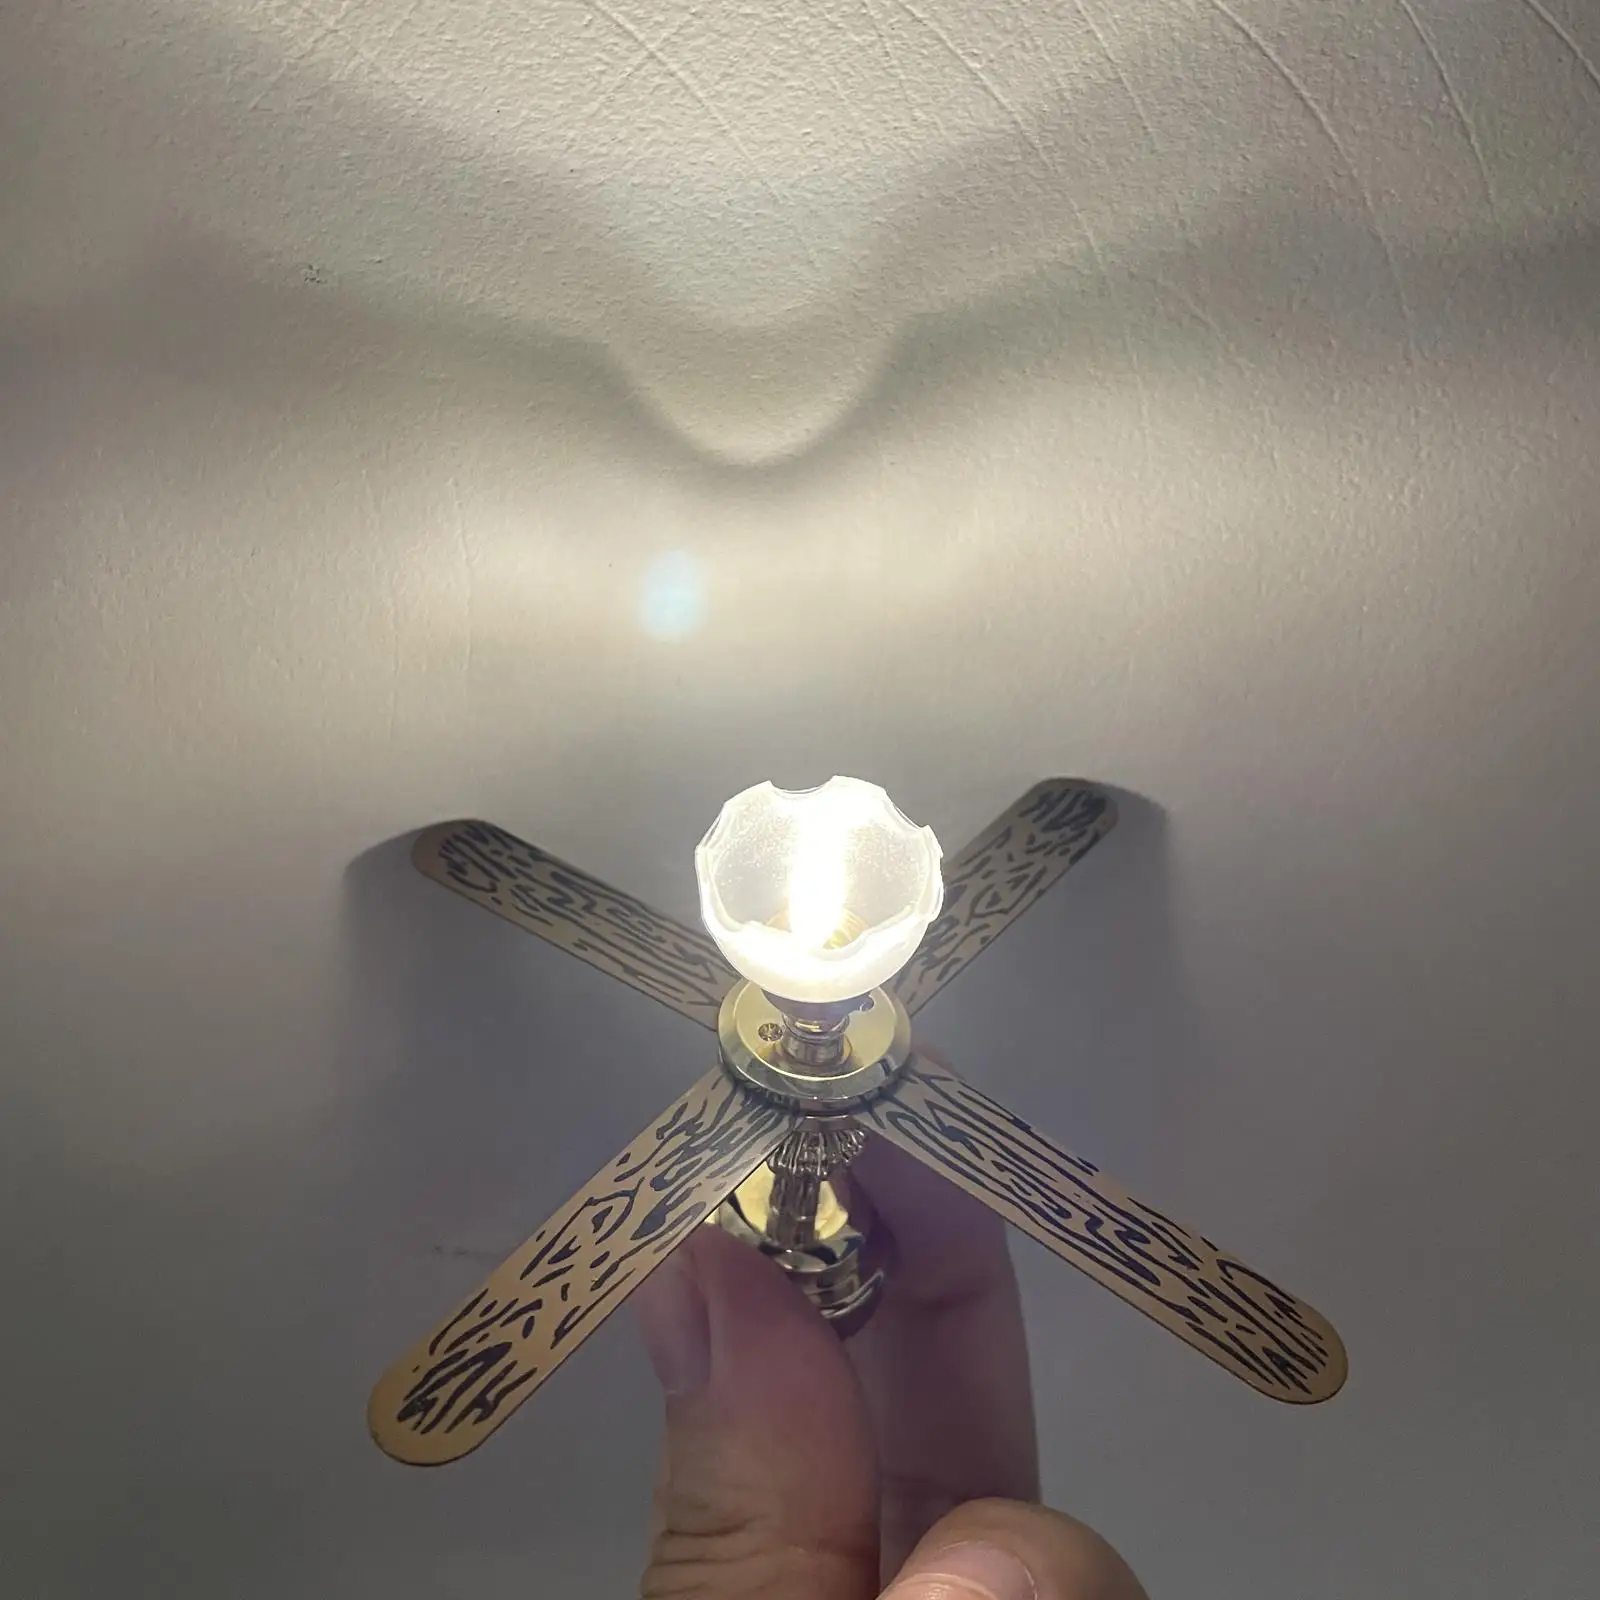 1/12  Dollhouse Ceiling Lamp Battery Powered Fan Light Lighting LED